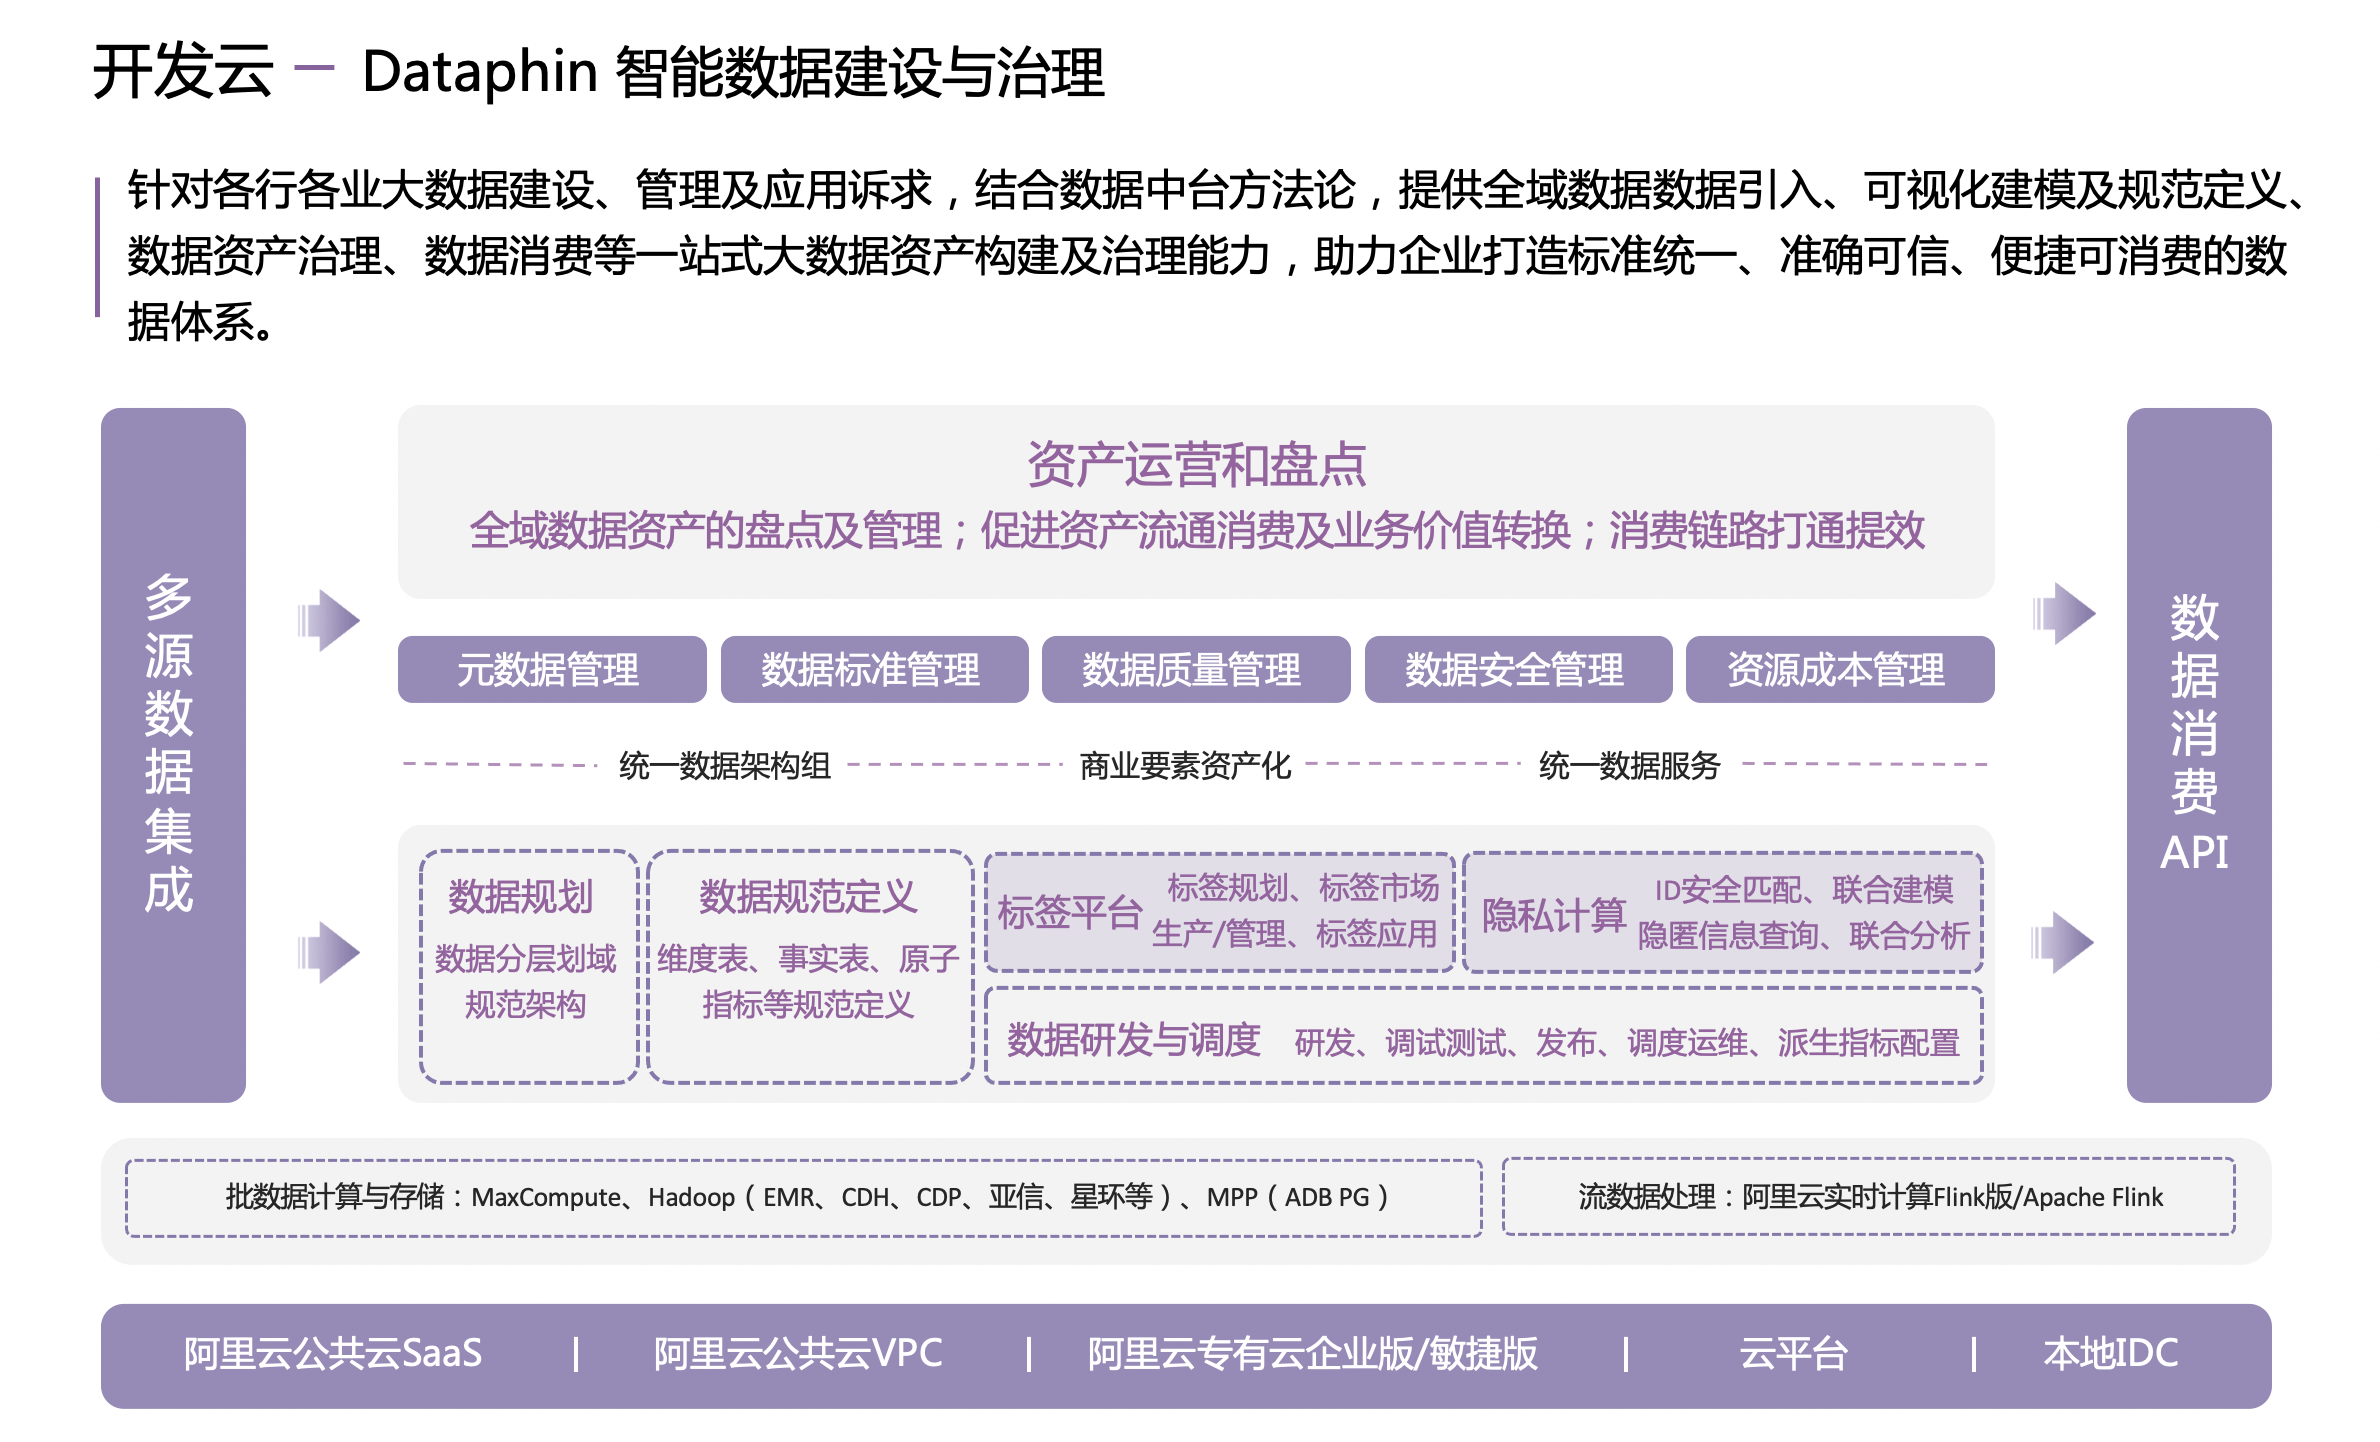 《数据安全流通方案（瓴羊隐私计算白皮书）》——三、Dataphin 隐私计算详解——1. Dataphin 产品介绍